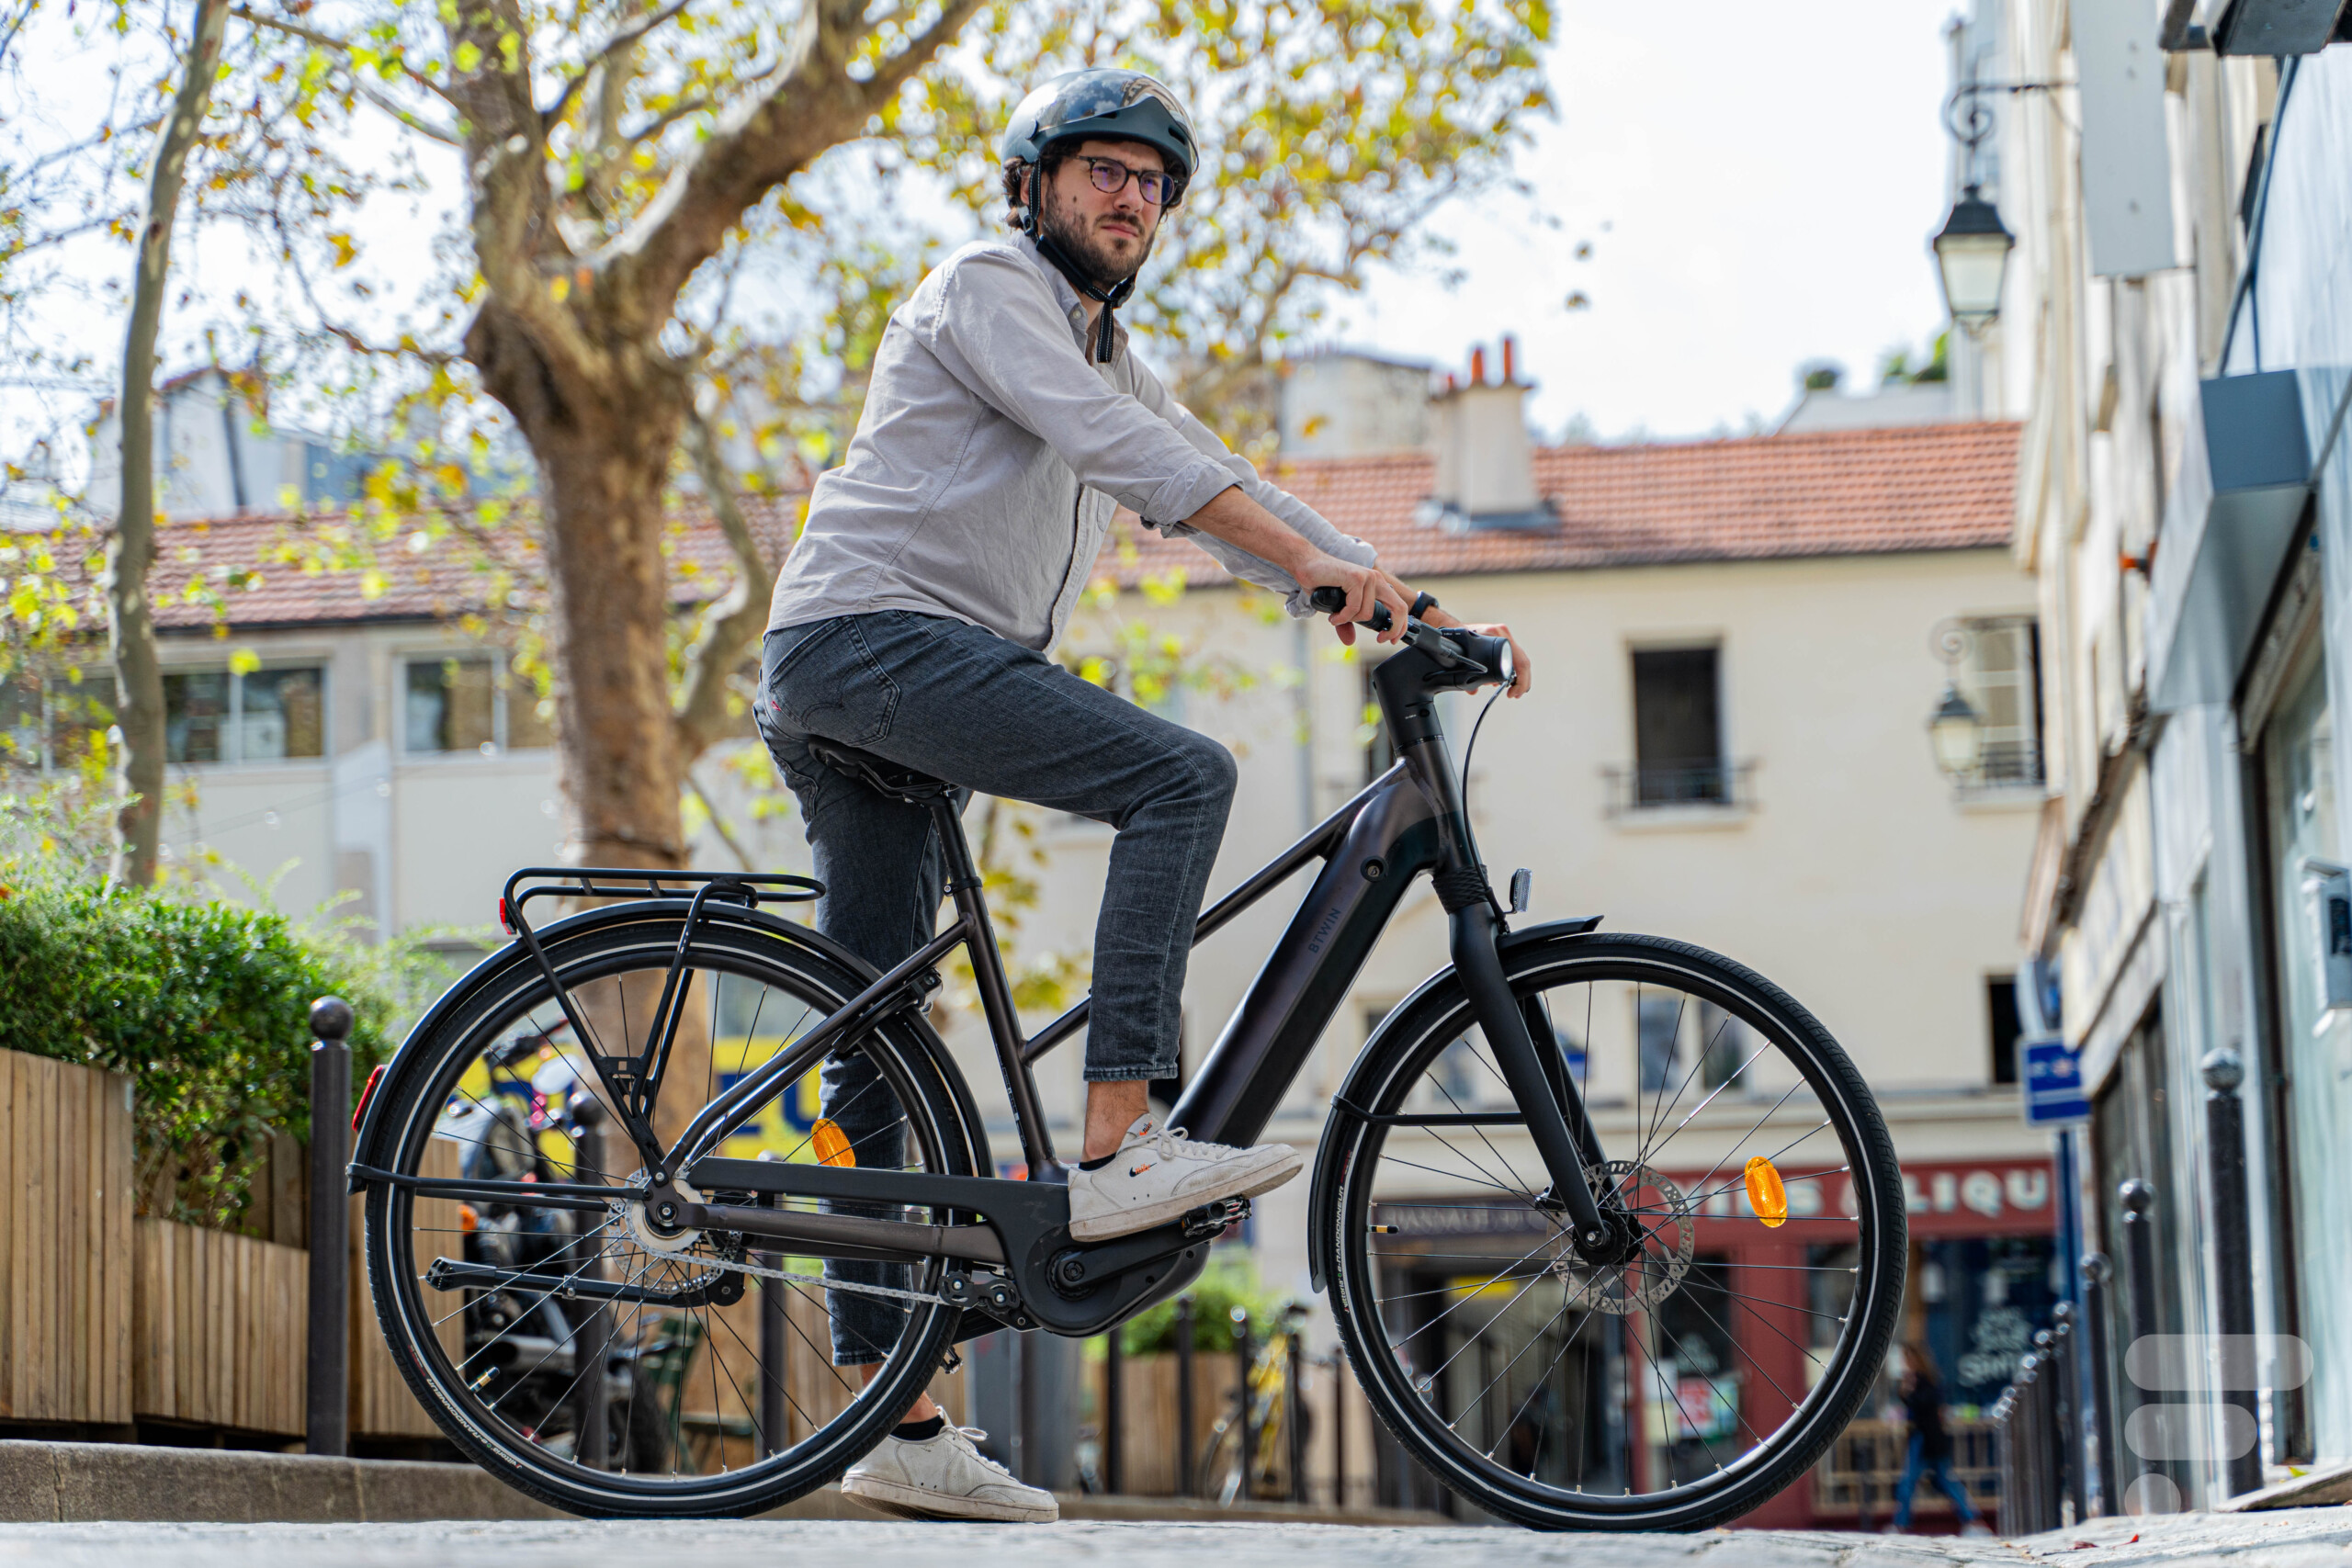 Decathlon révèle son Magic Bike, un concept de vélo électrique